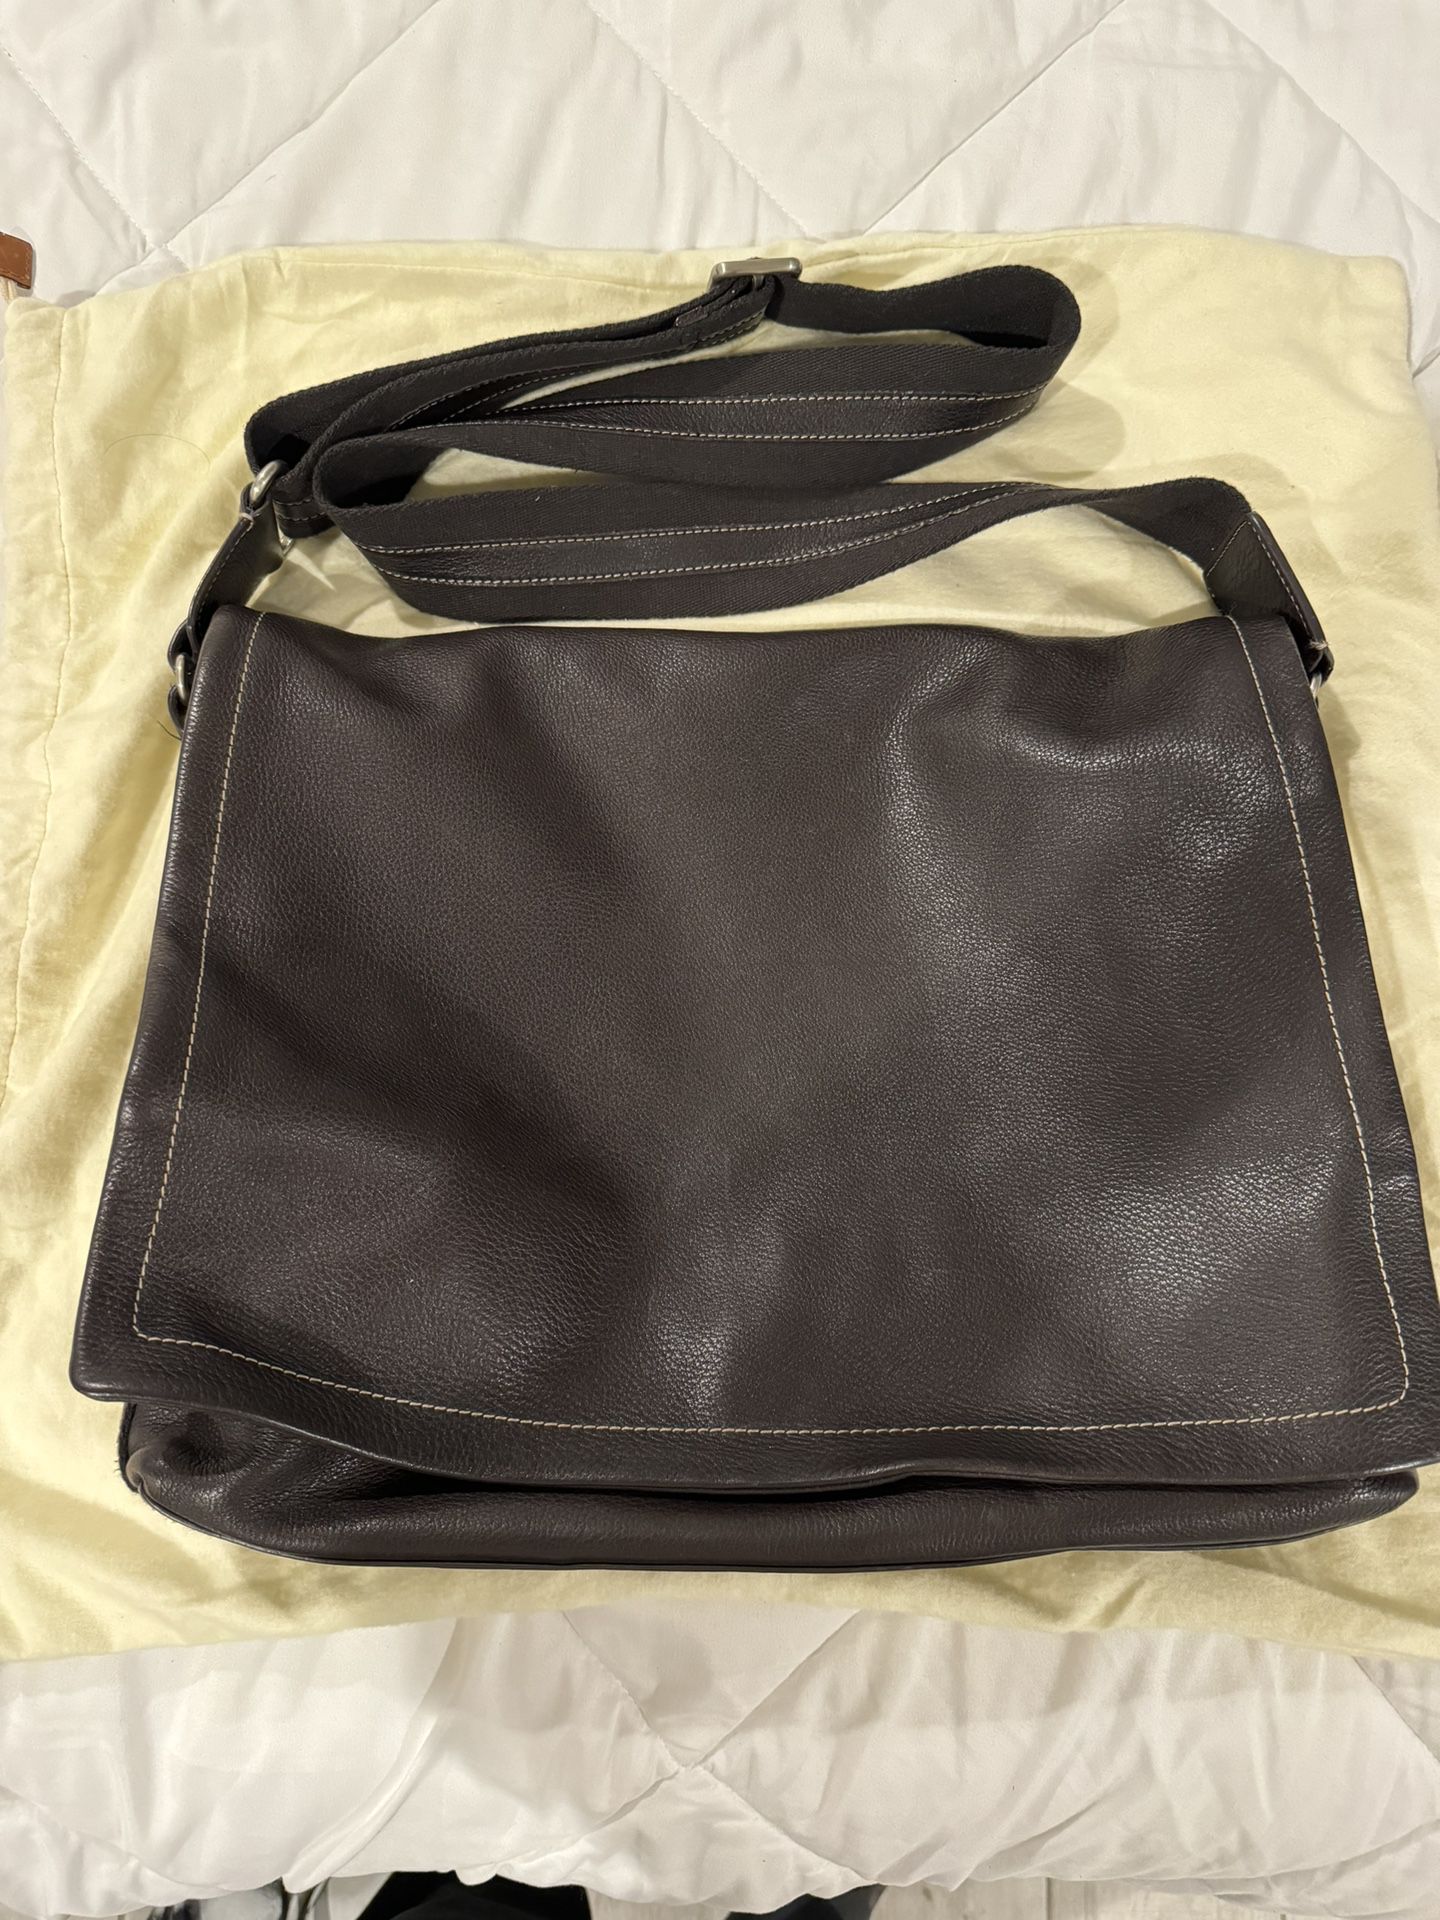 Levenger Leather Bomber Jacket Laptop Messenger Bag